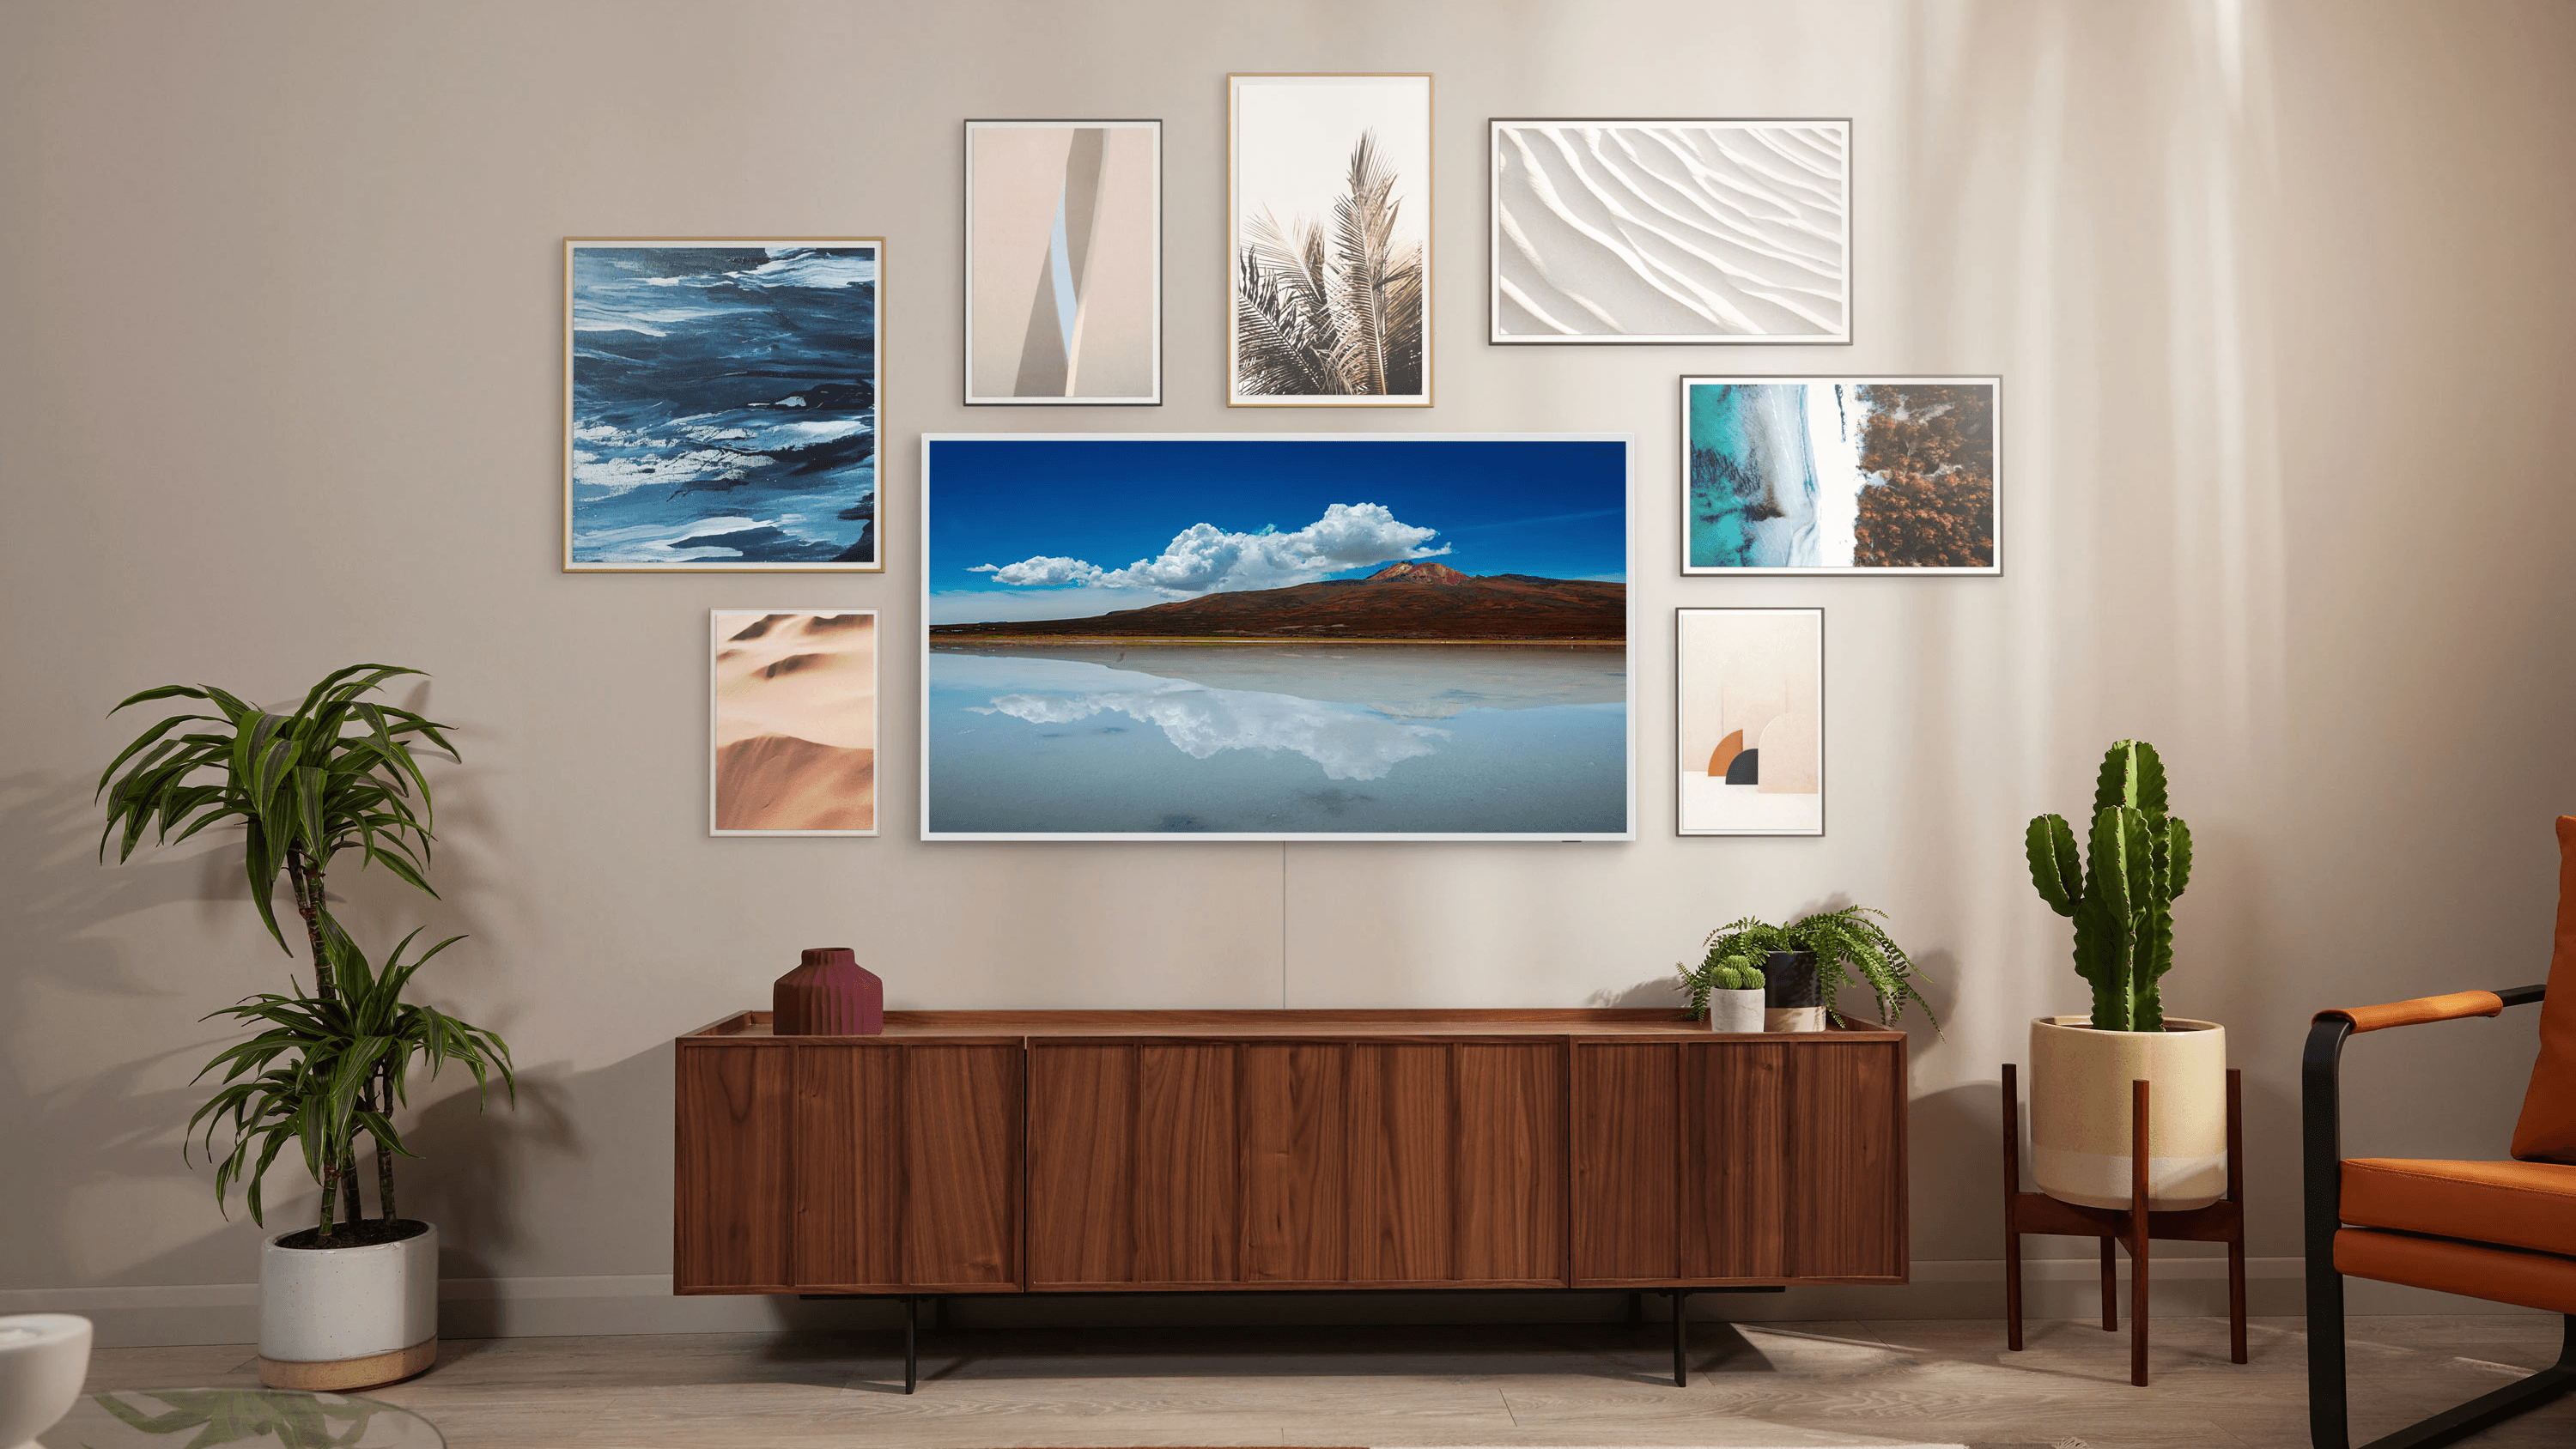 Transforma y personaliza tu hogar con el televisor “The Frame” de Samsung